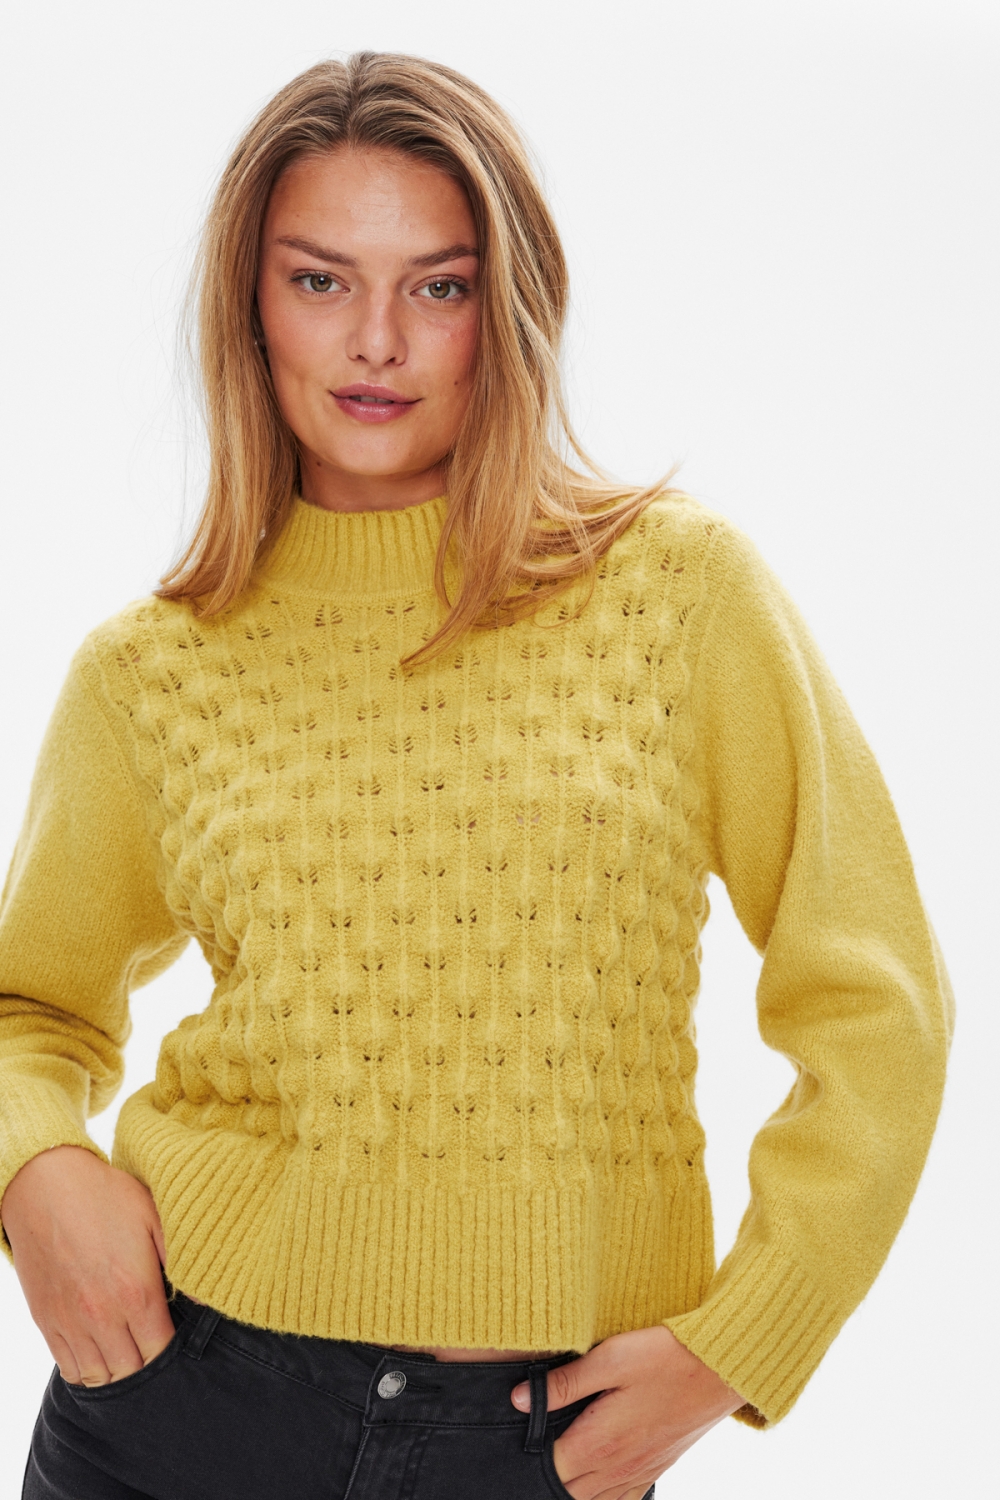 
Strikket genser i myk kvalitet med fint hullmønster. Den strikkede genseren er enkel i designet med lange ermer, ribbekanter og en løs passform. En nydelig strikk i en nydelig kvalitet.

Lange ermer
Løs passform
Ribbede kanter
Hullmønster